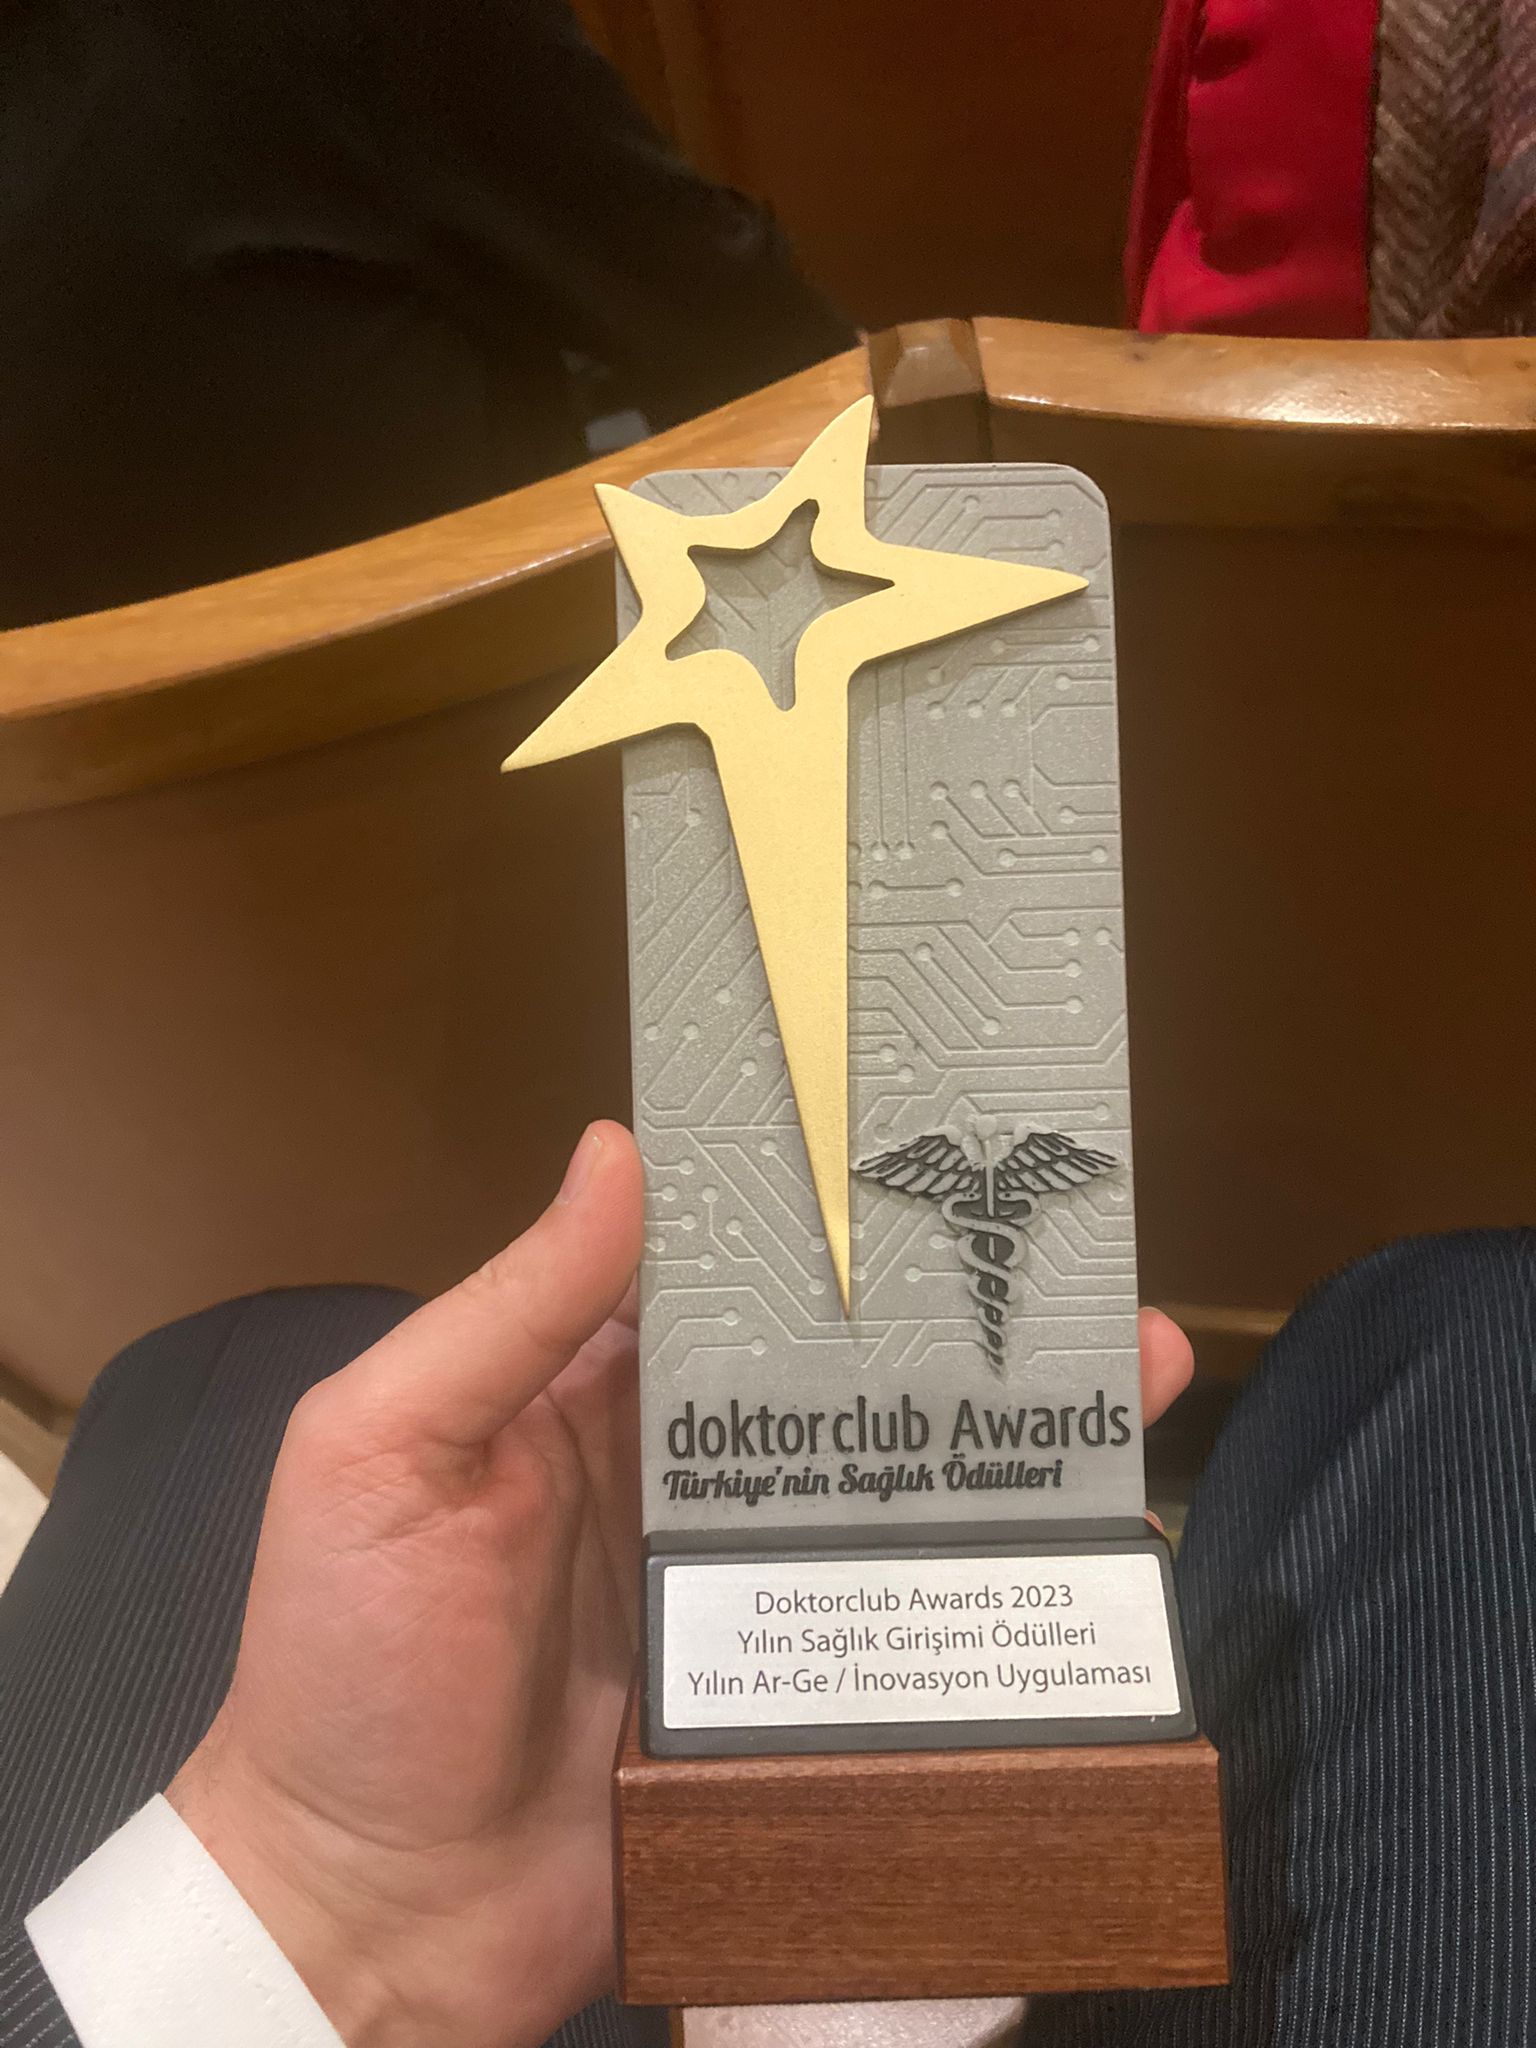 Öçsoy’a Doktorclub Awards 2023 ödülü (3)